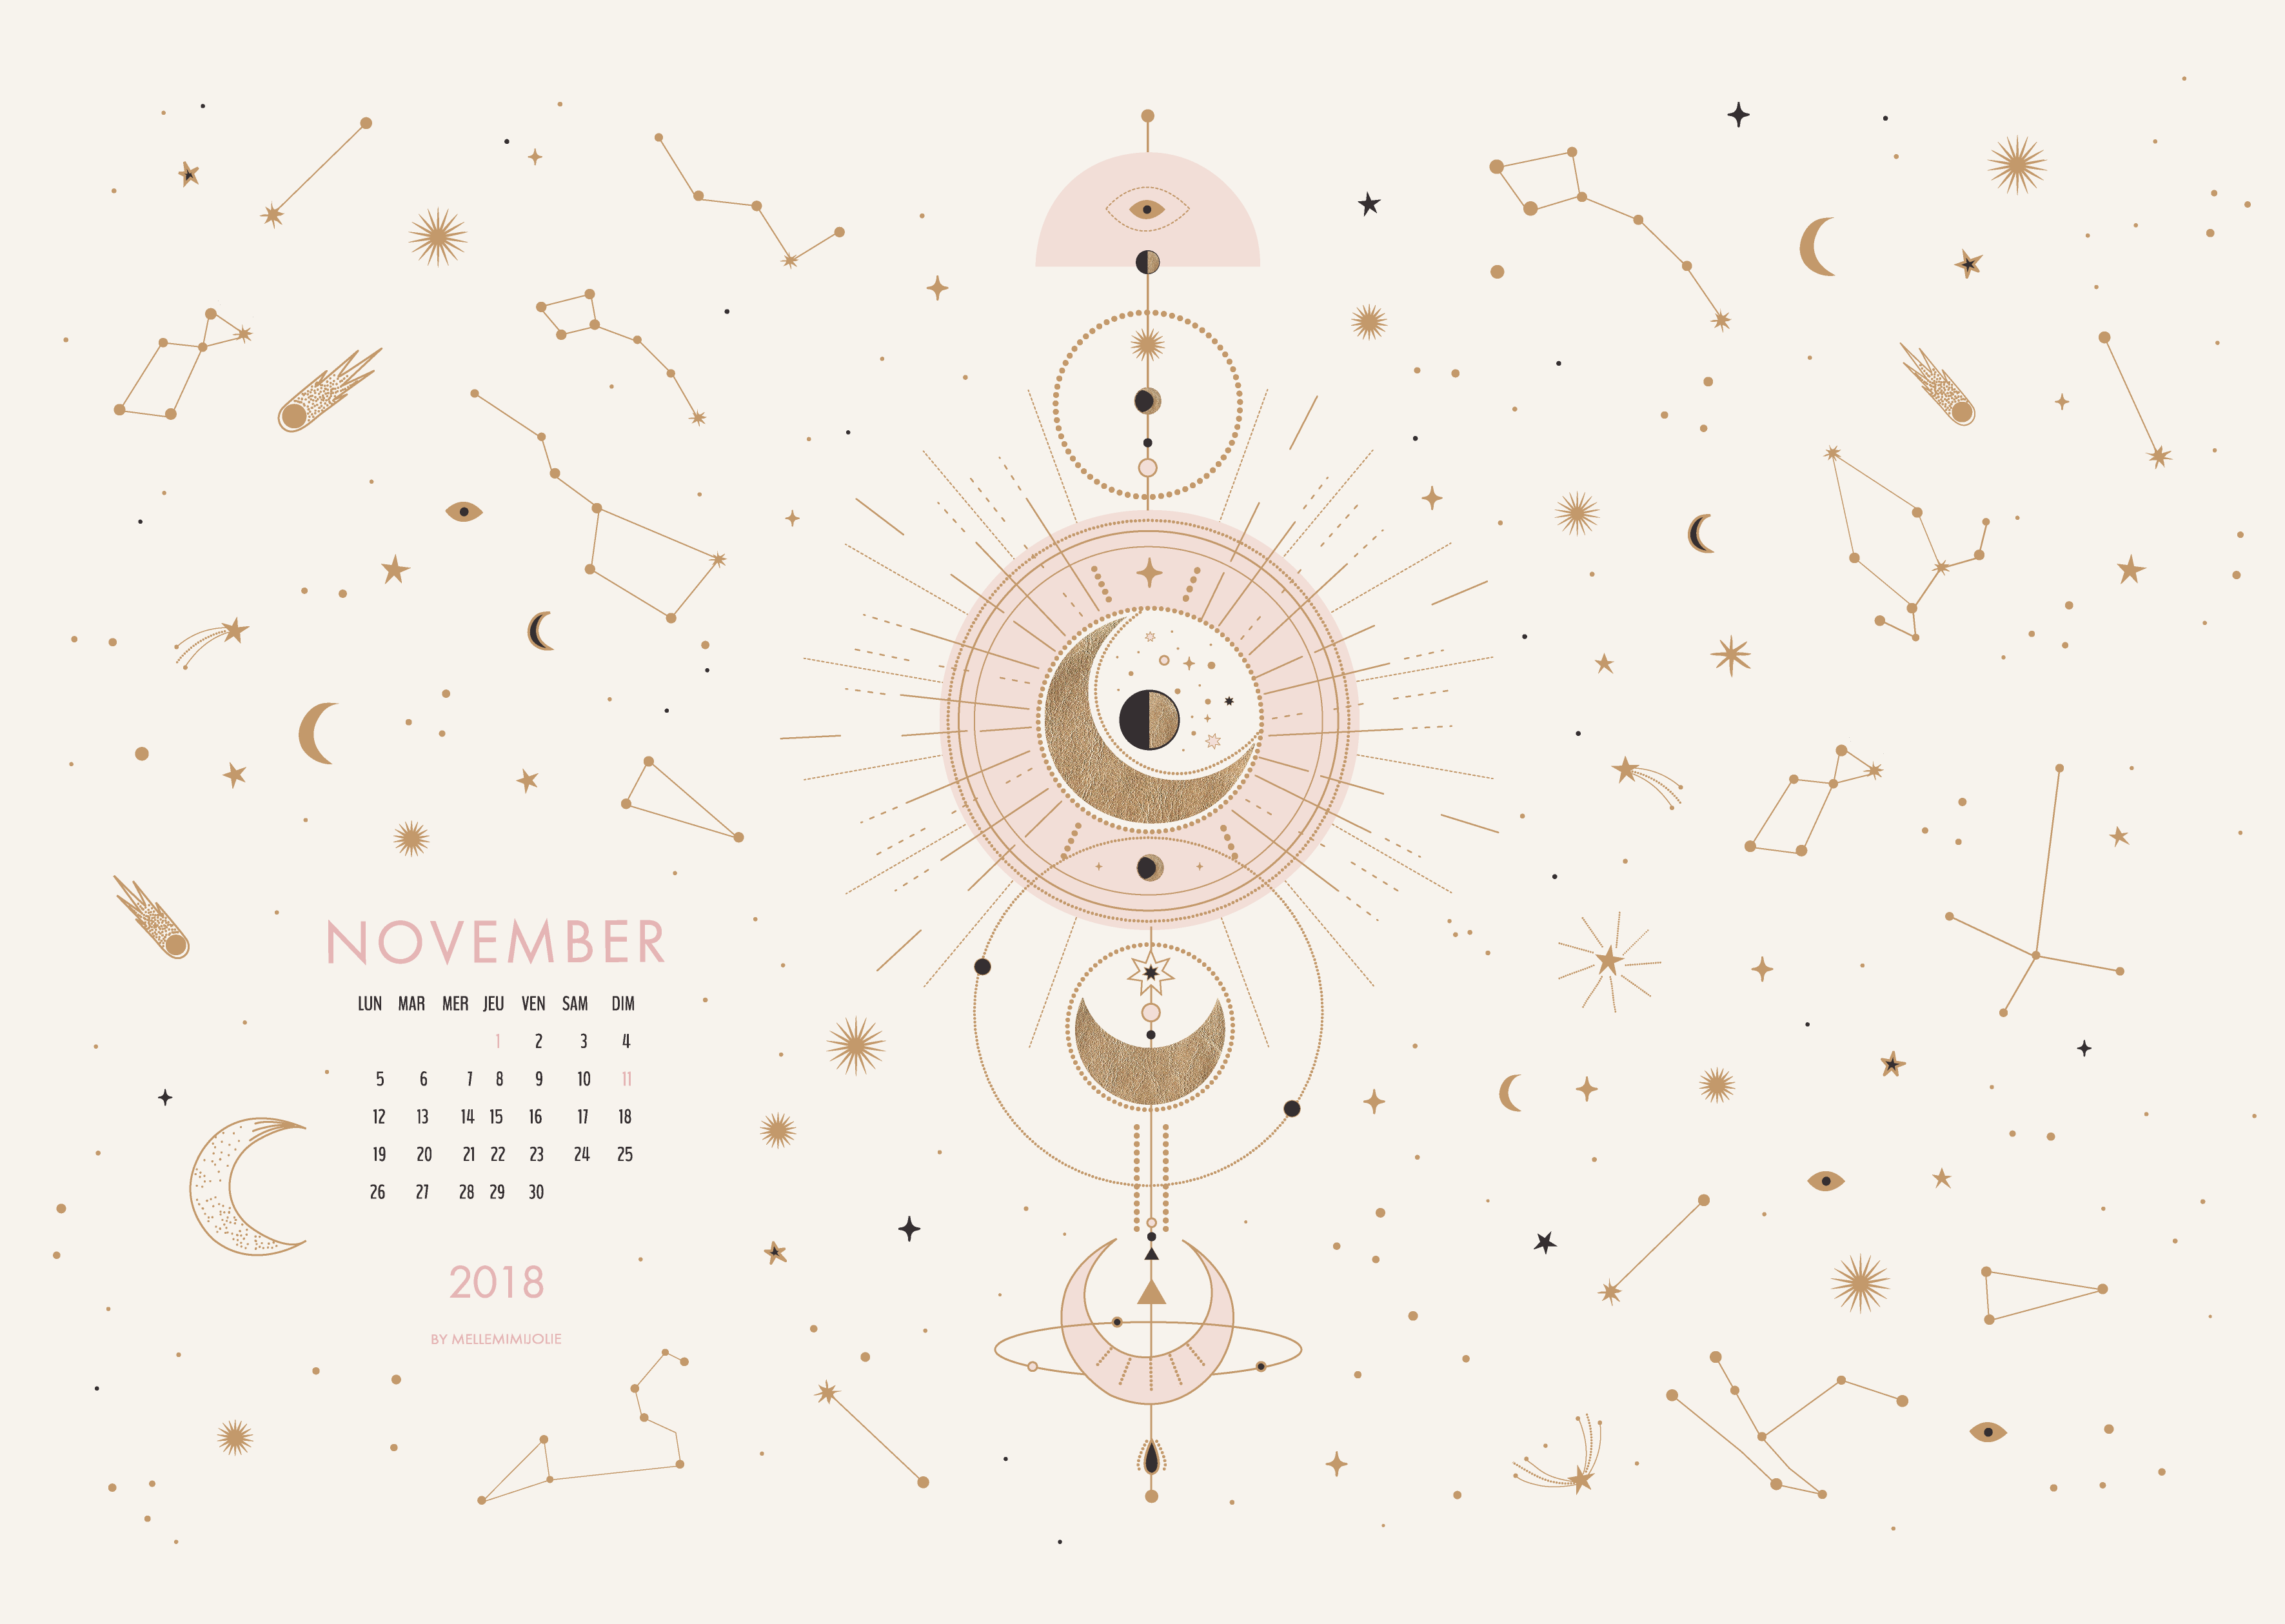 constellations-novembre2018-mimijolie